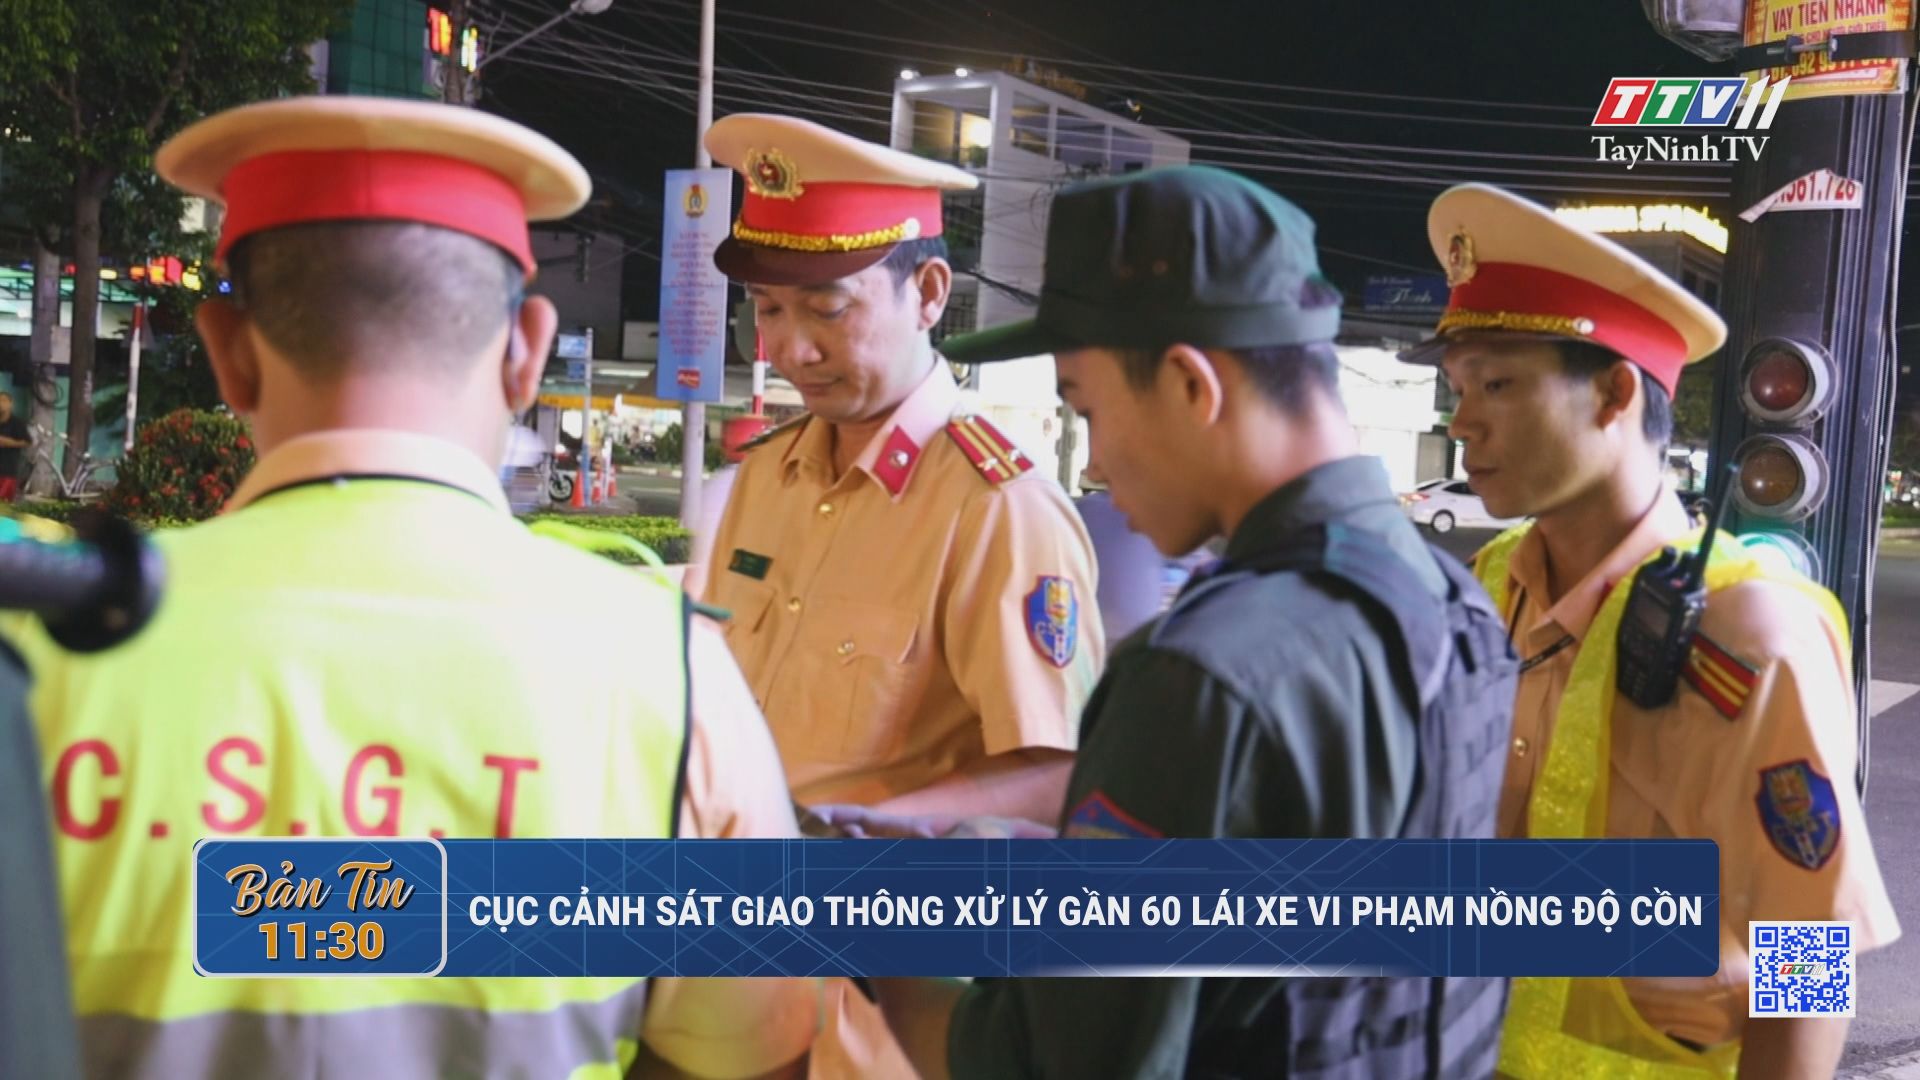 Cục Cảnh sát giao thông xử lý gần 60 lái xe vi phạm nồng độ cồn | TayNinhTV